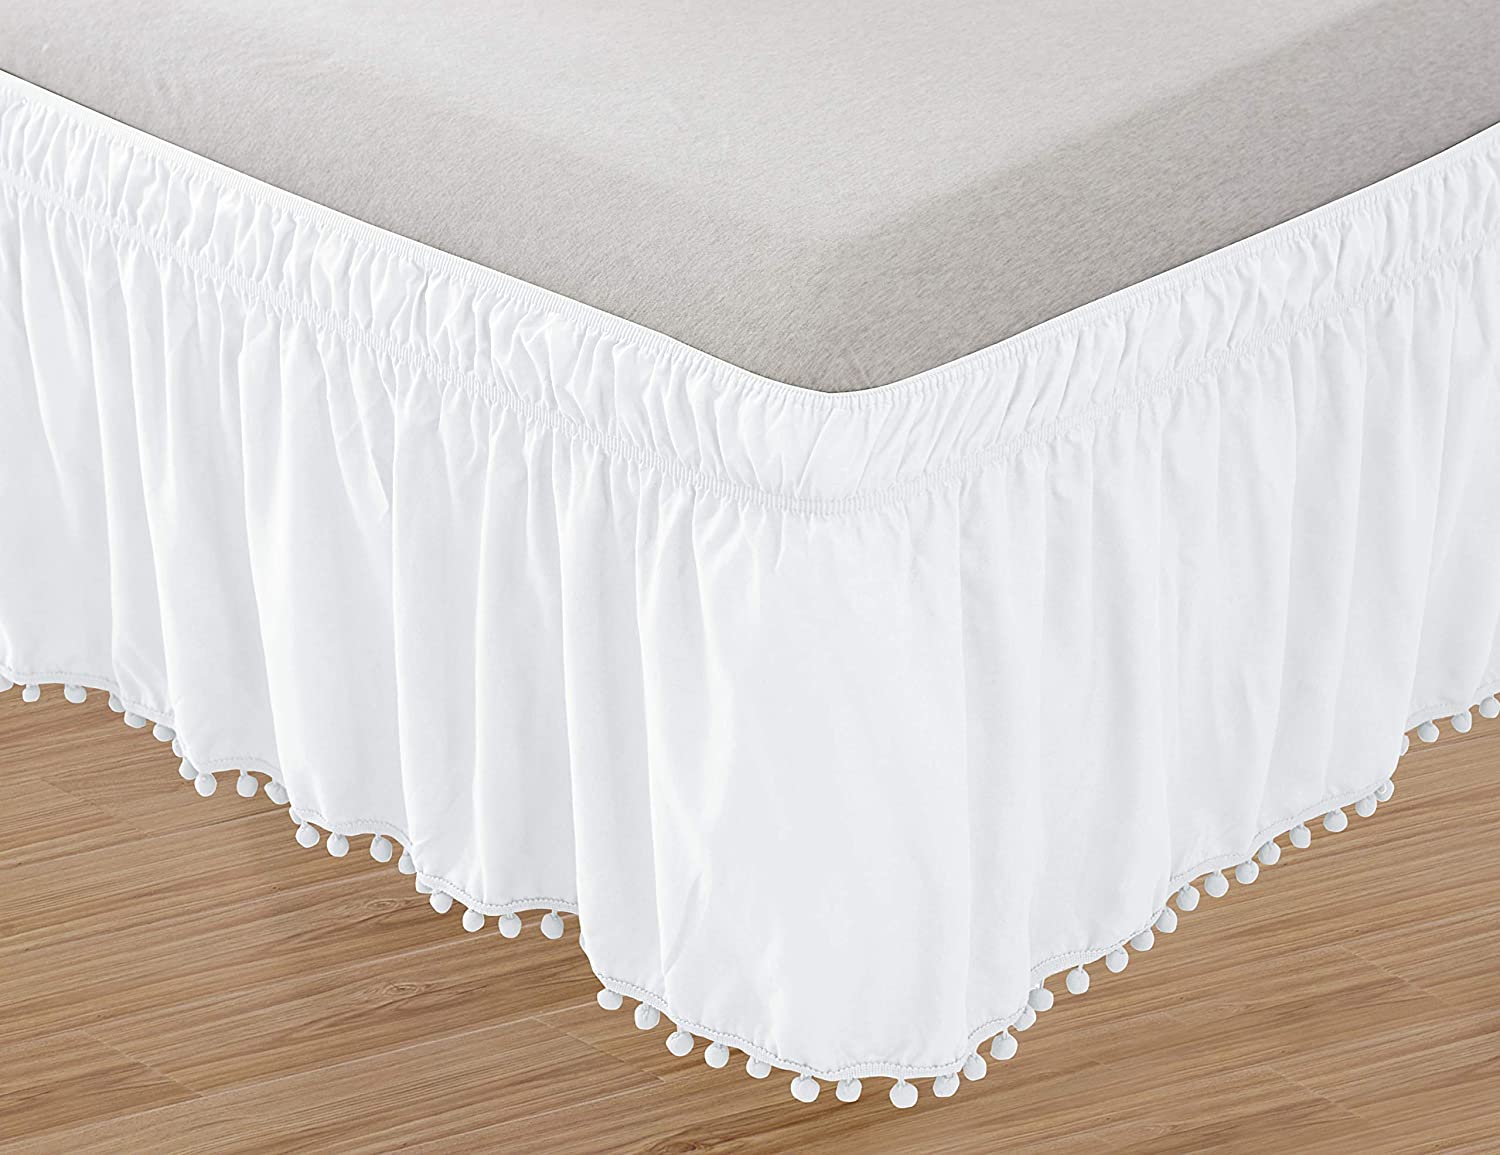 Elegant Pom-Pom Top Knot Tassle Bed Skirt